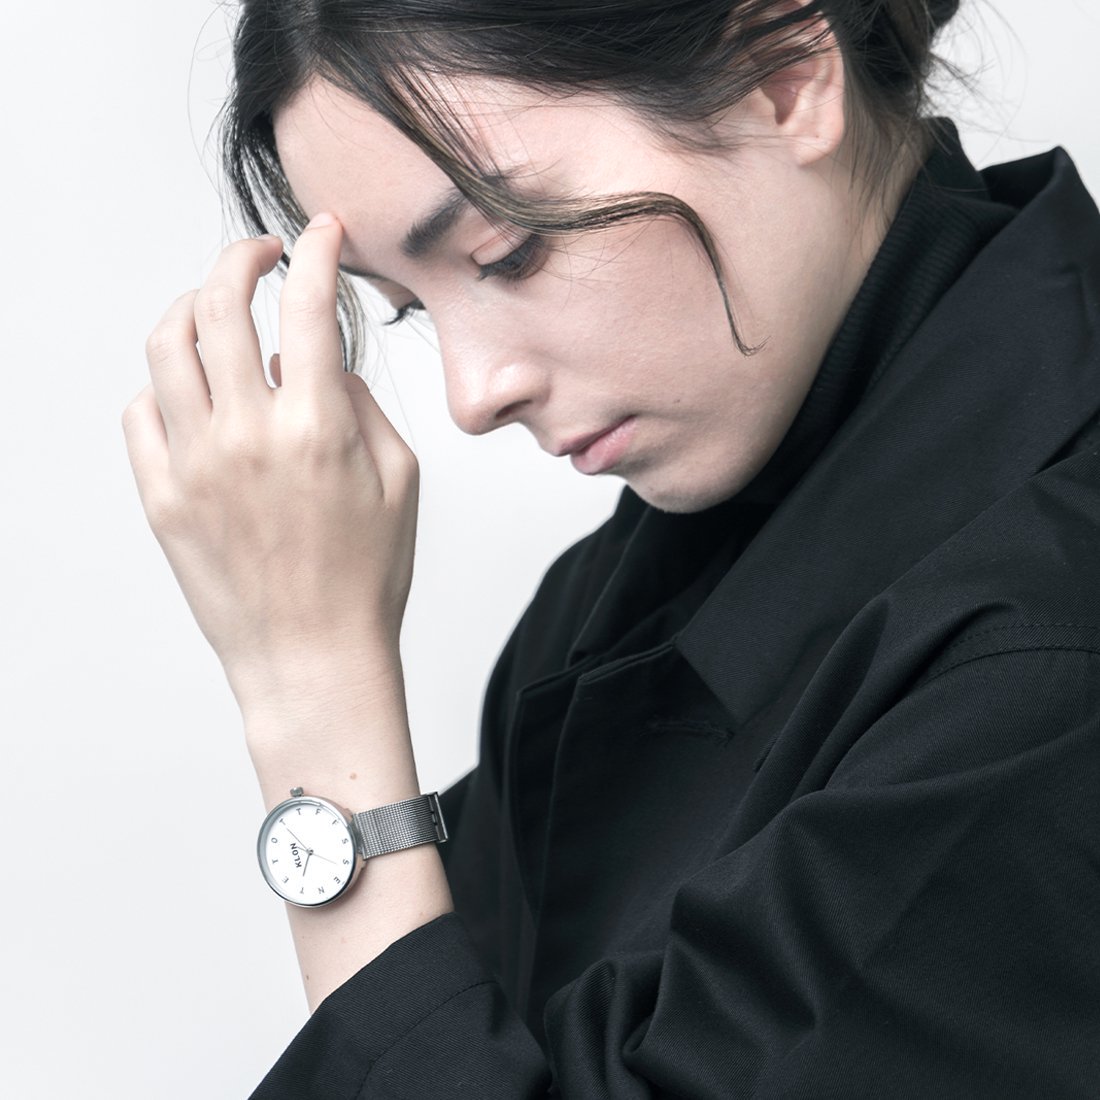 【組合せ商品】KLON ALPHABET TIME -SILVER MESH- Ver.SILVER(40mm×33mm) カジュアル 腕時計